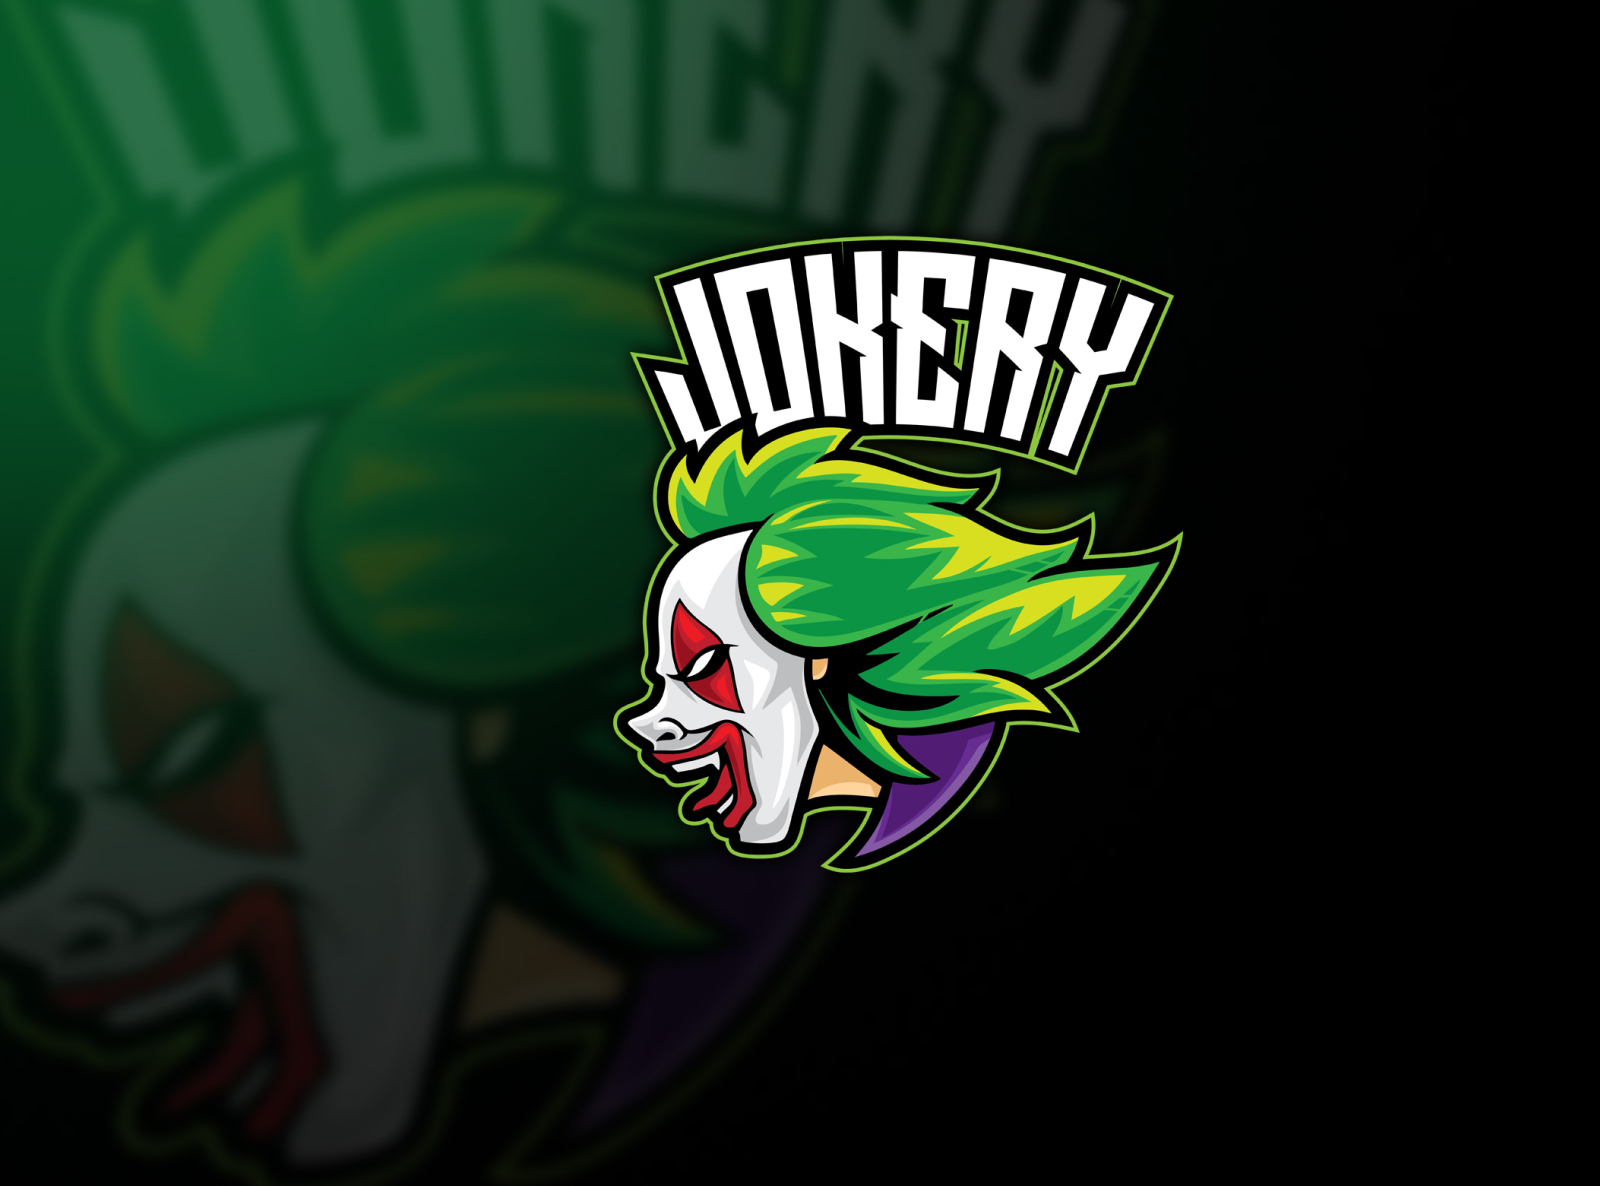 Joker Clown Esport Logo by ianmikraz on Dribbble